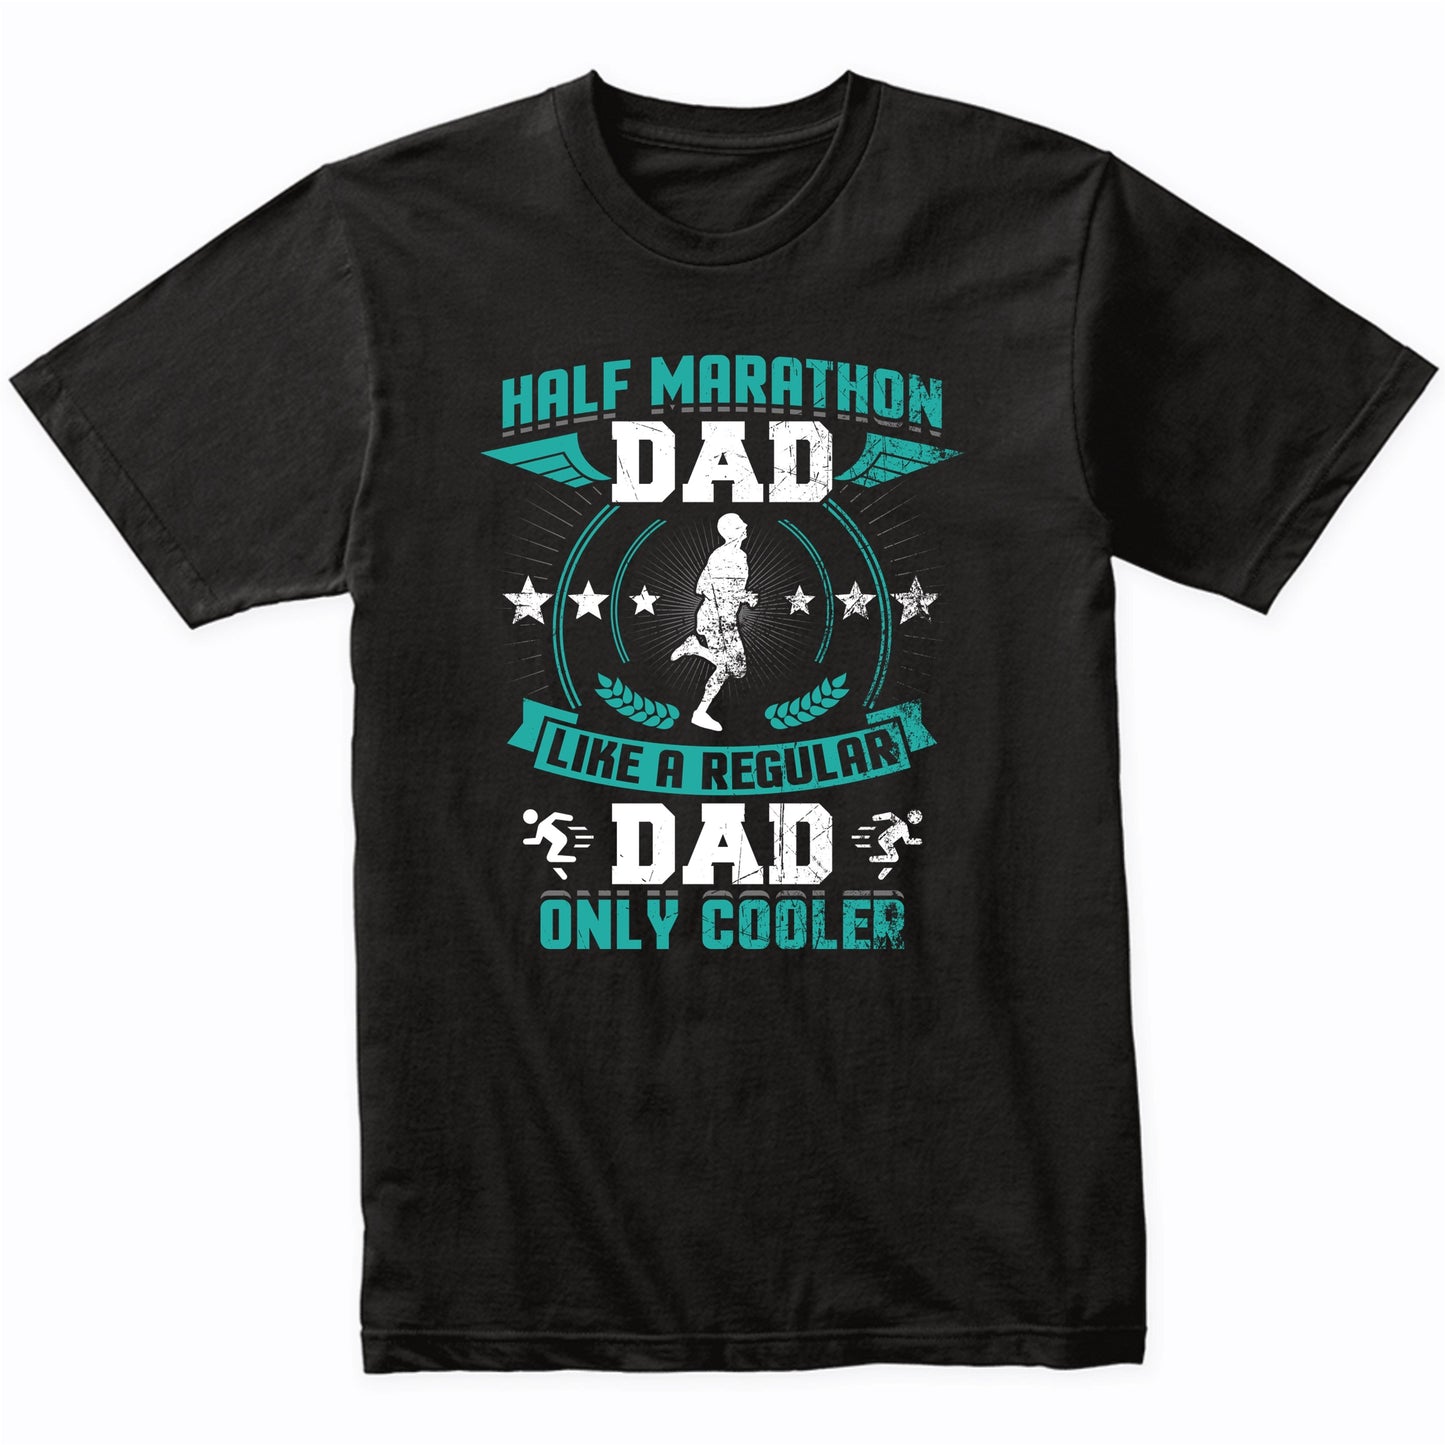 Half Marathon Dad Like A Regular Dad Only Cooler Funny T-Shirt